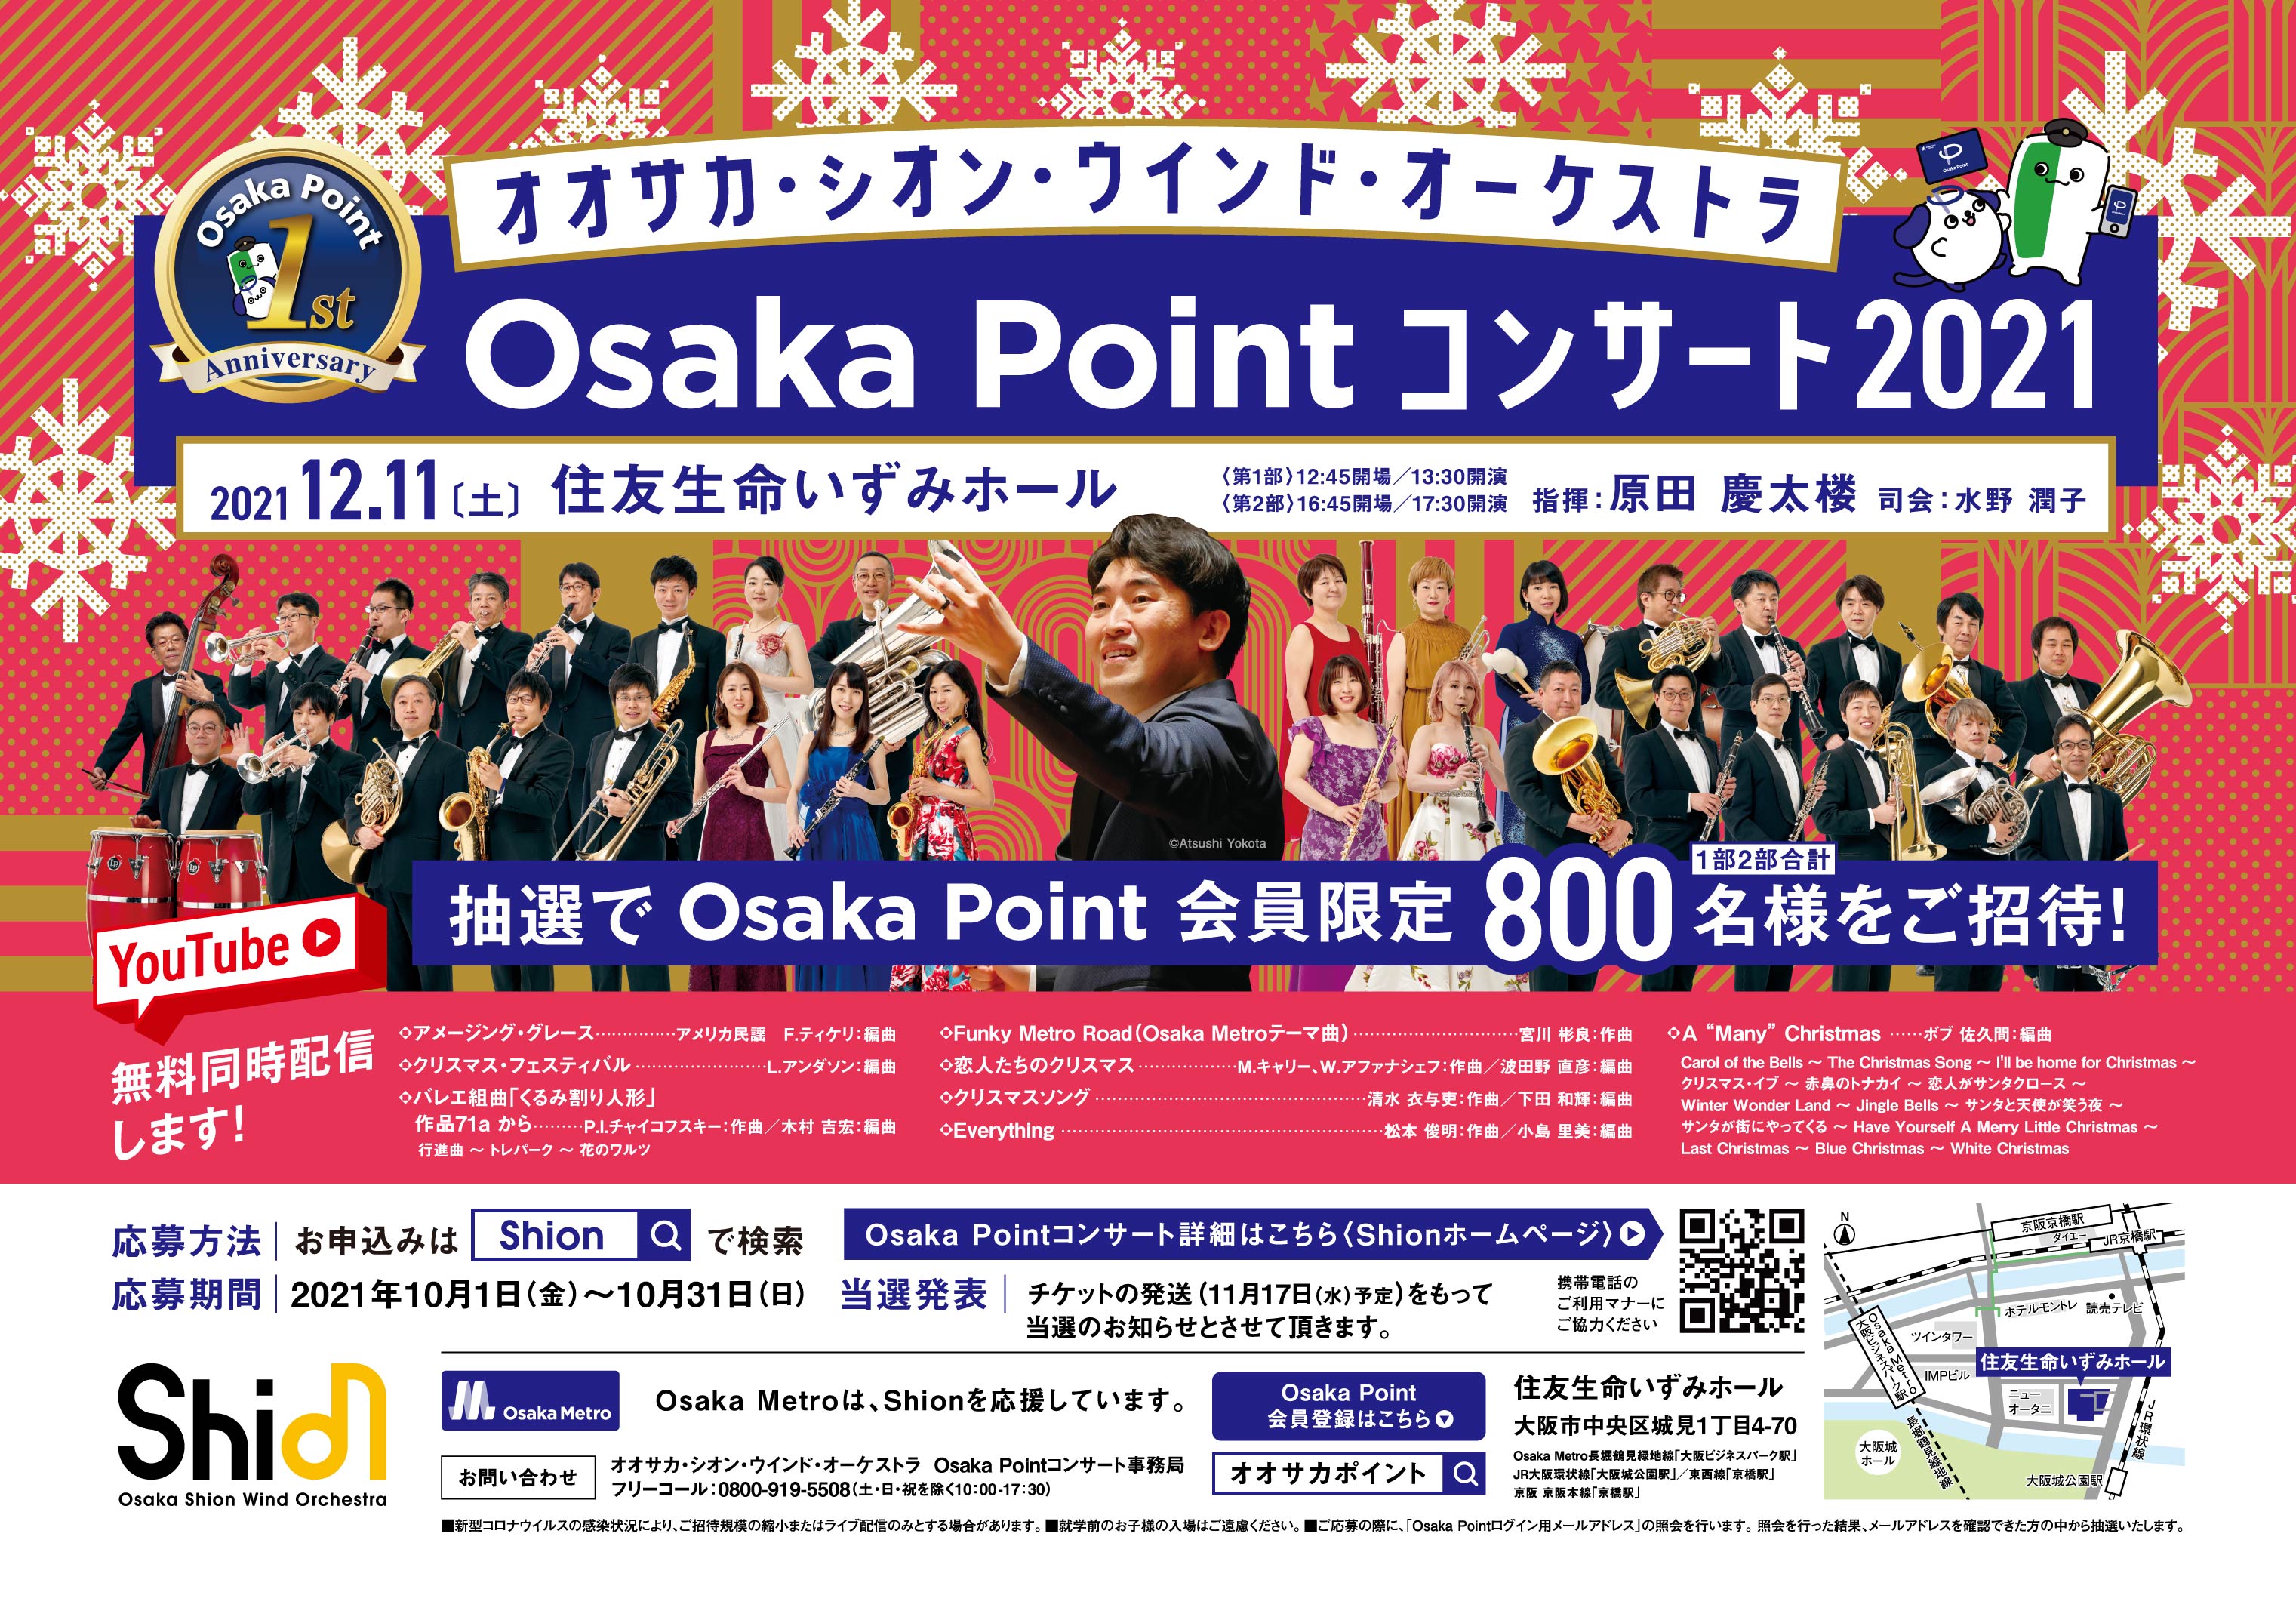 オオサカ シオン ウインド オーケストラ Osaka Pointコンサート2021 にosaka Point会員800名様を無料ご招待 Sankeibiz サンケイビズ 自分を磨く経済情報サイト